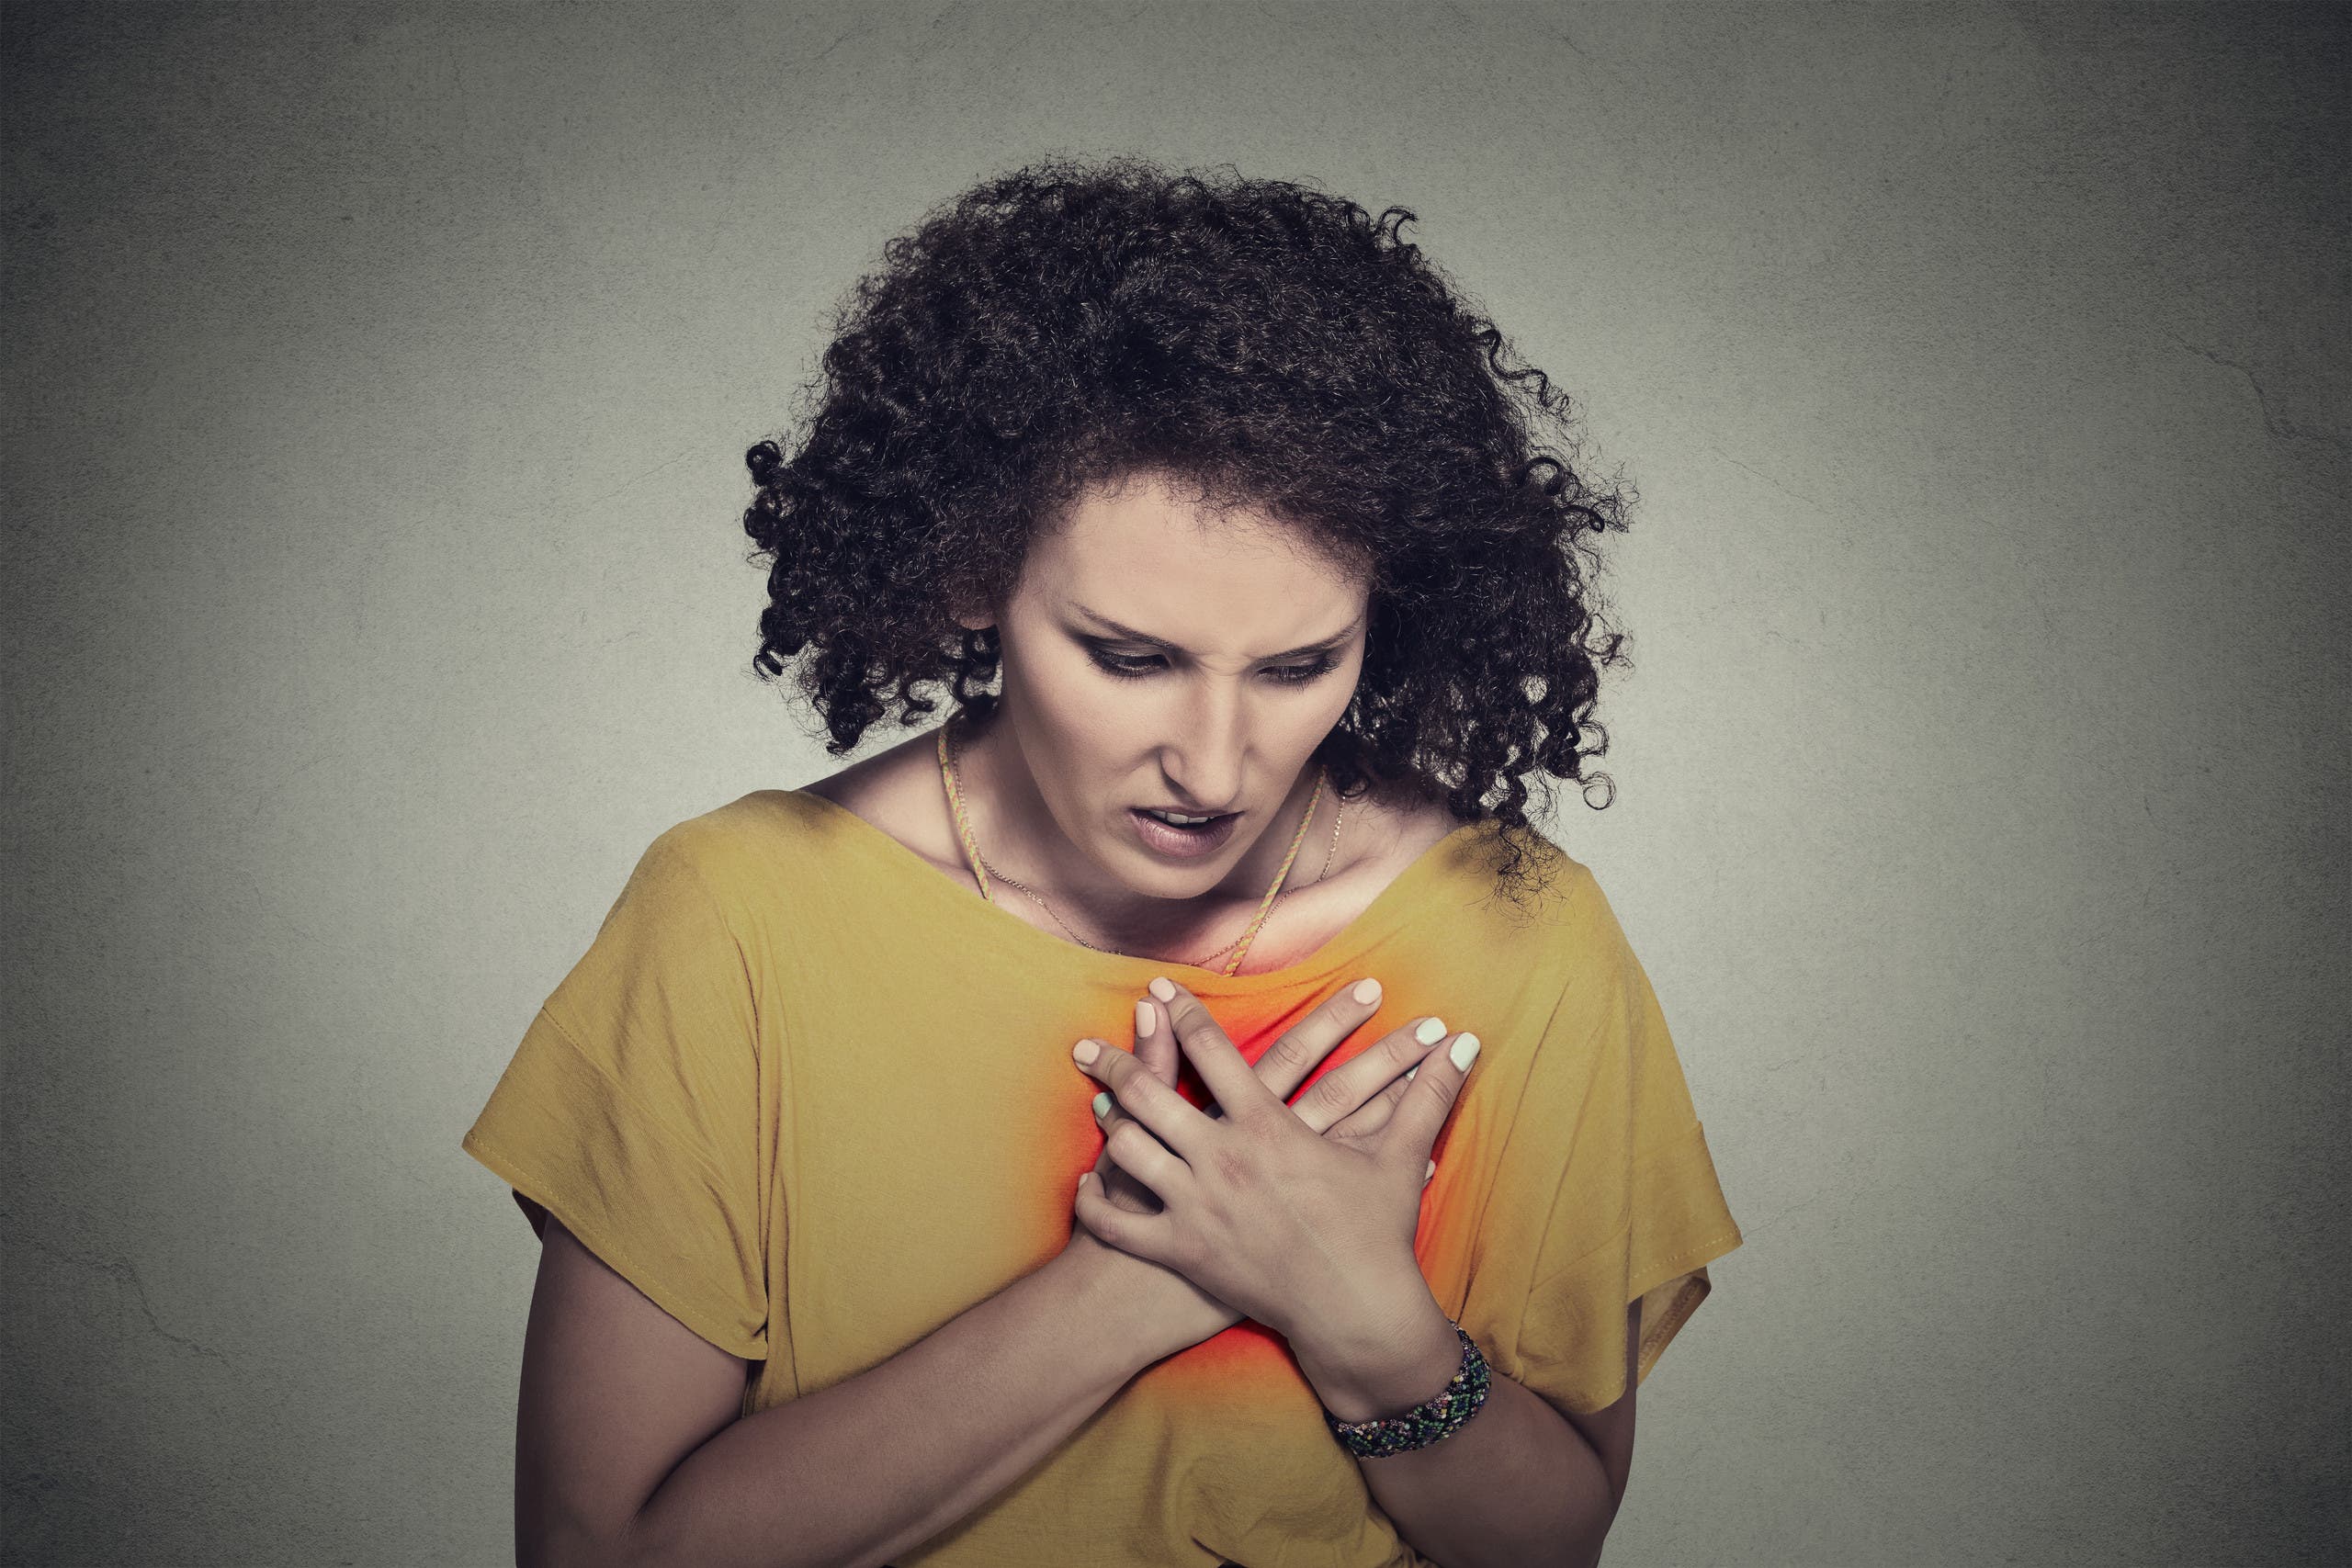 بزمن كورونا.. ما أسباب ازدياد النوبات القلبية بين الشباب؟